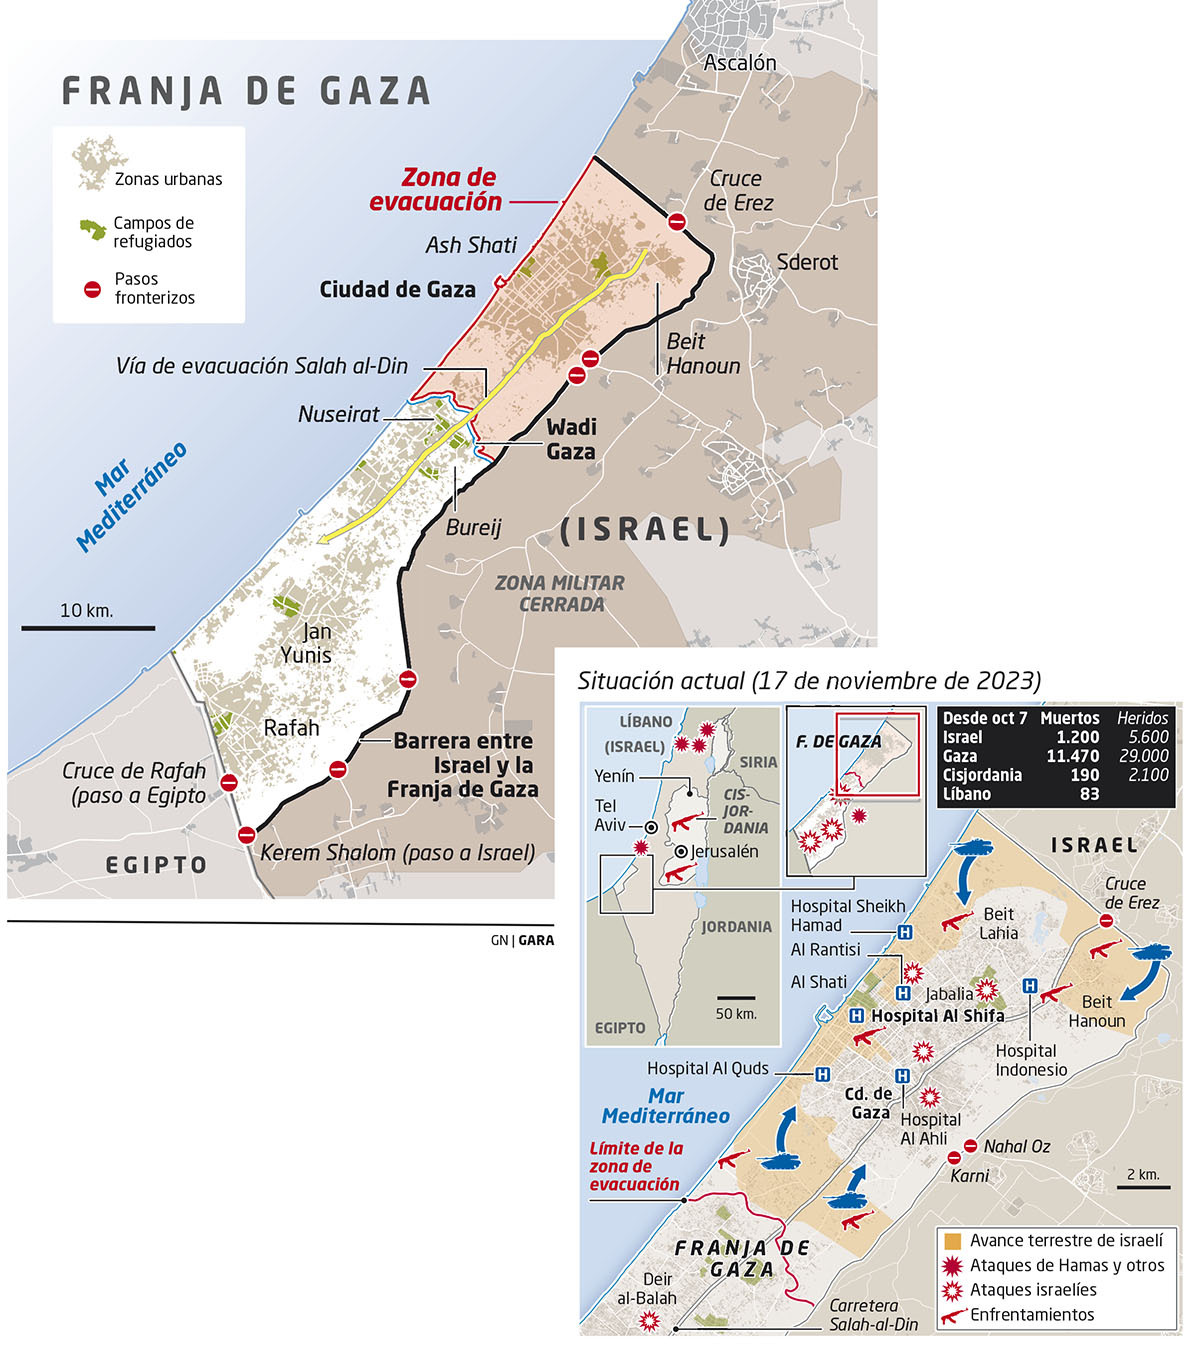 palestina - Palestina, burguesía y privatización capitalista - Página 5 Franffa